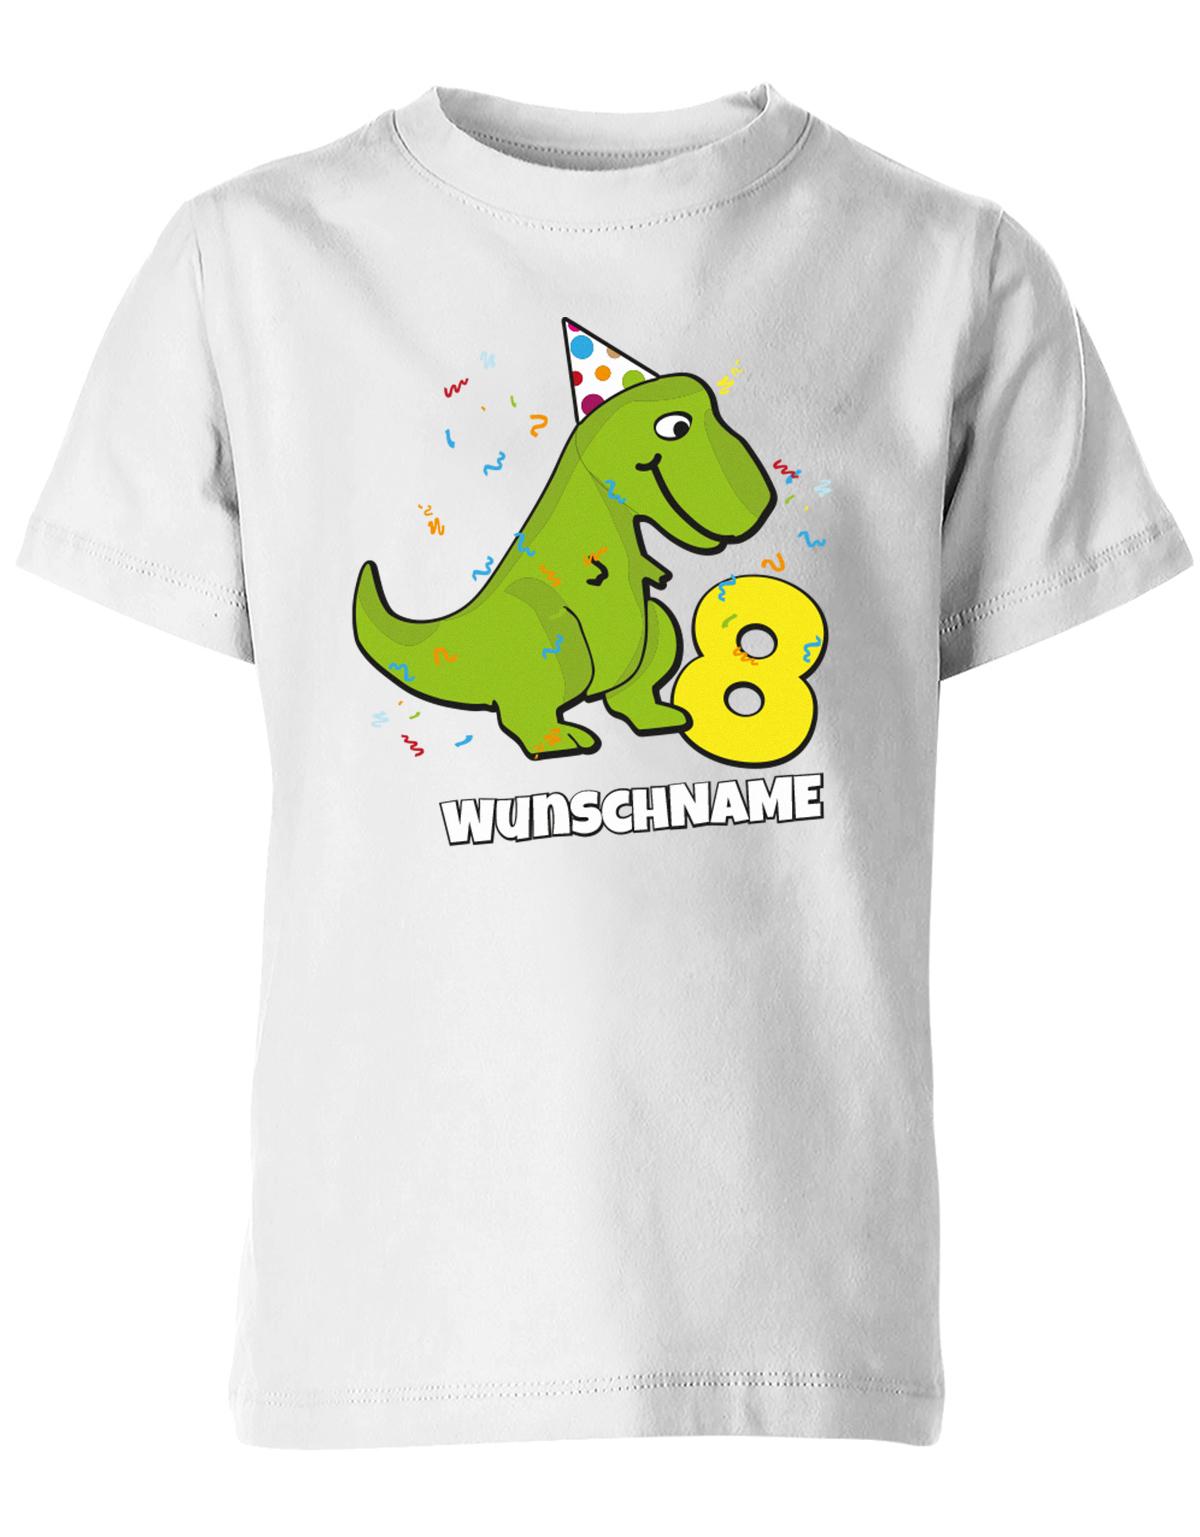 ich-bin-8-Dinosaurier-t-rex-wunschname-geburtstag-kinder-shirt-weiss